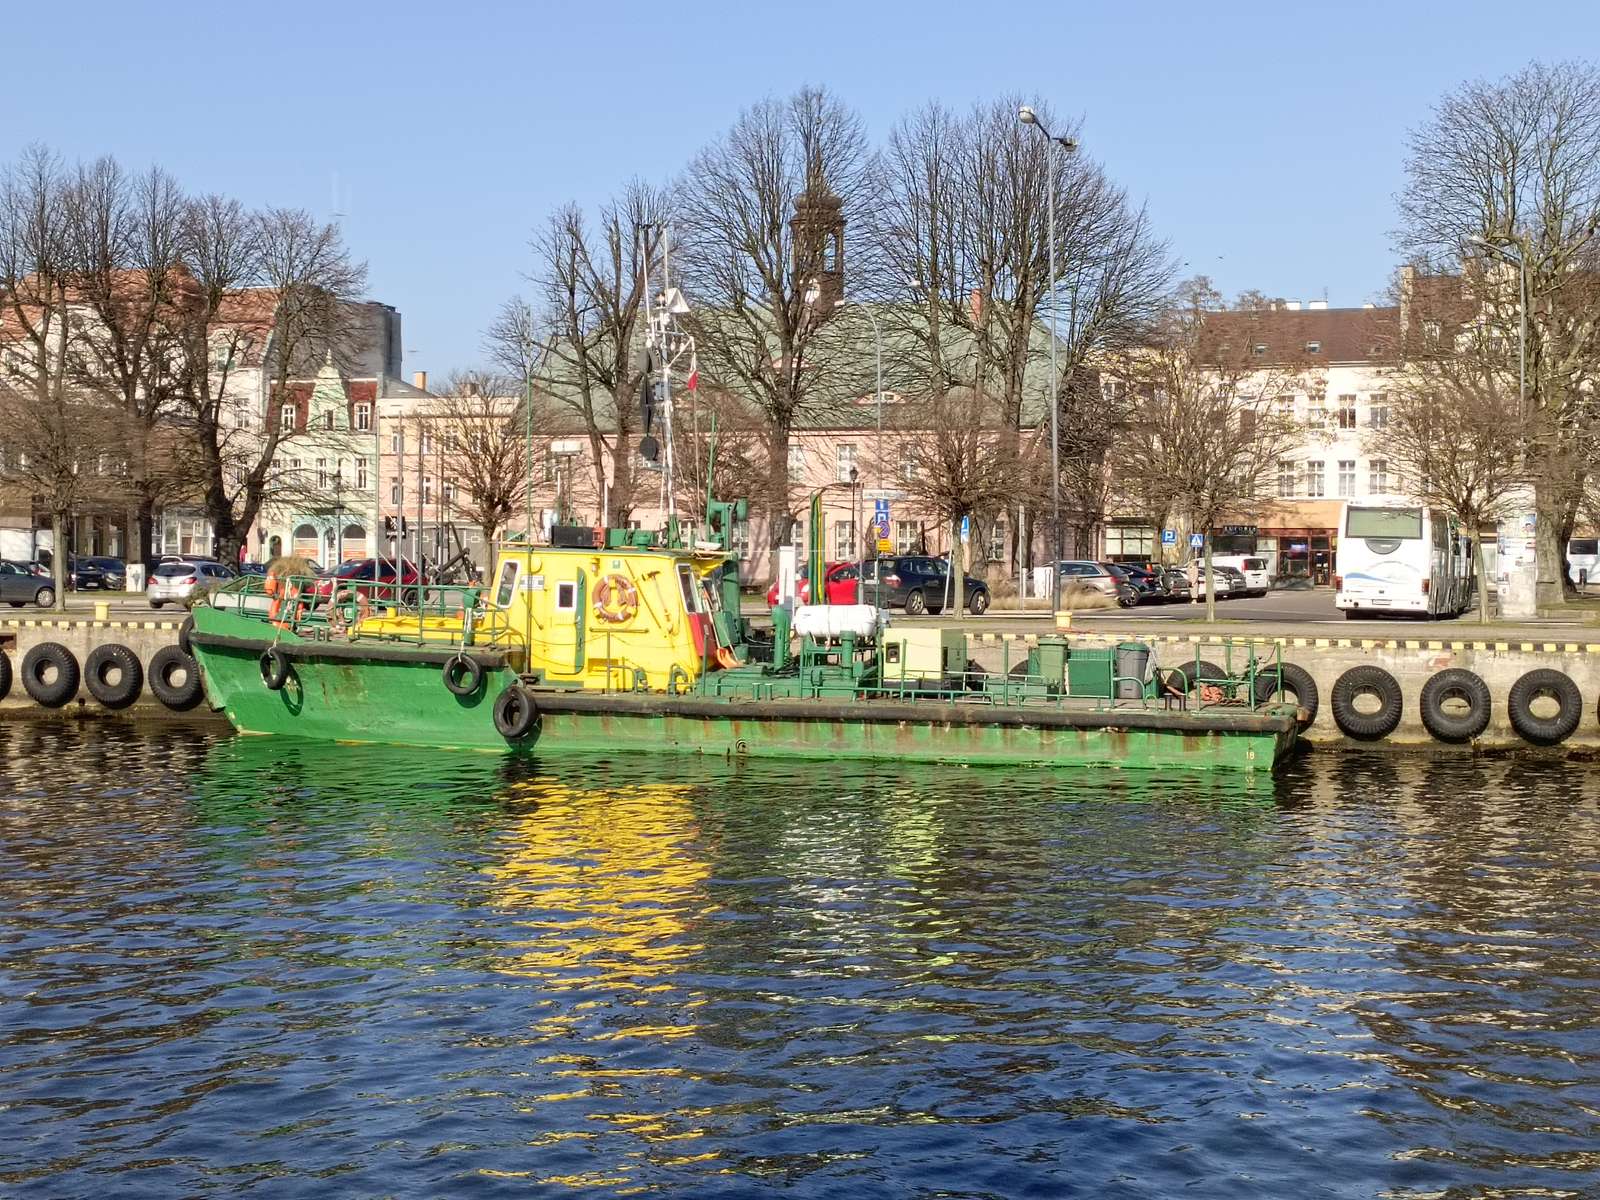 緑と黄色の船 ジグソーパズルオンライン